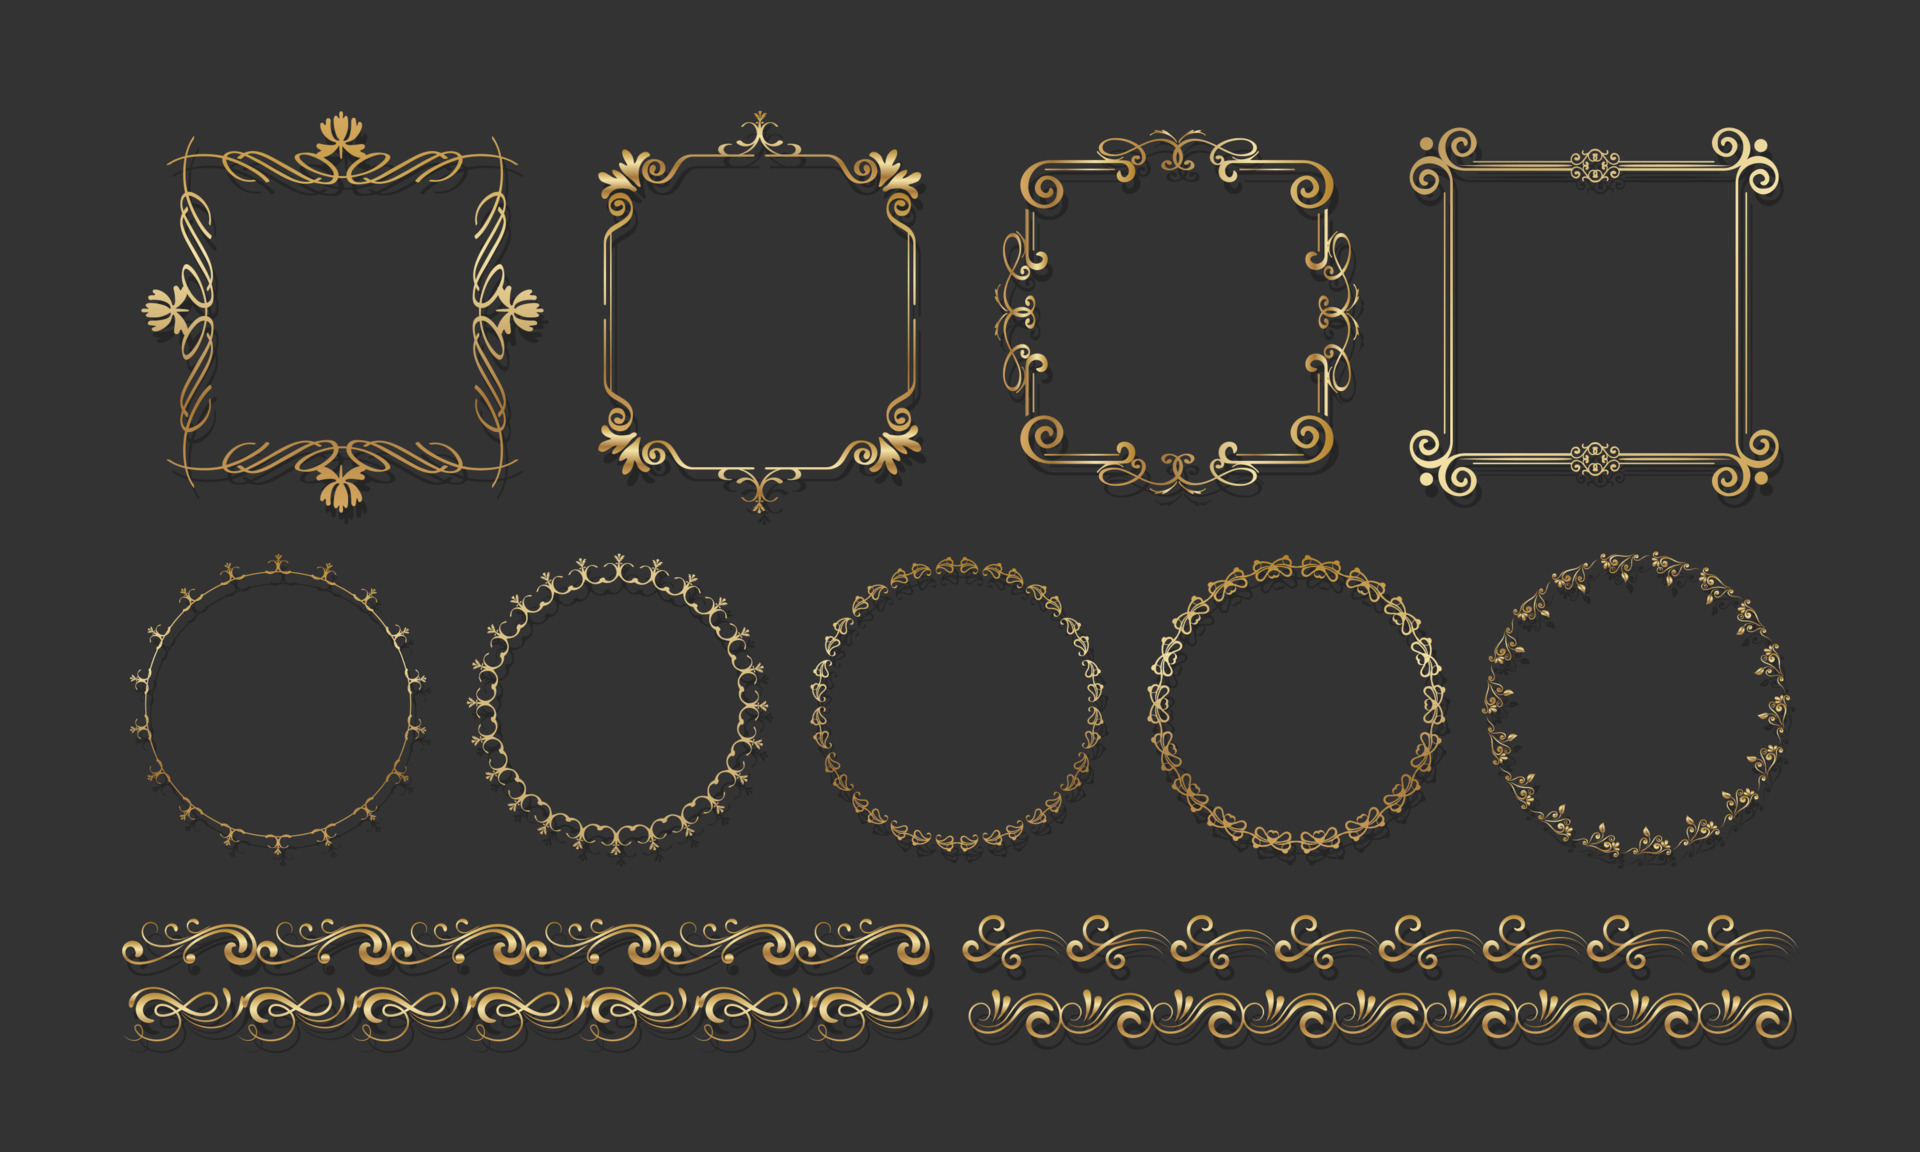 Calligraphic golden letters vintage elegant gold Vector Image